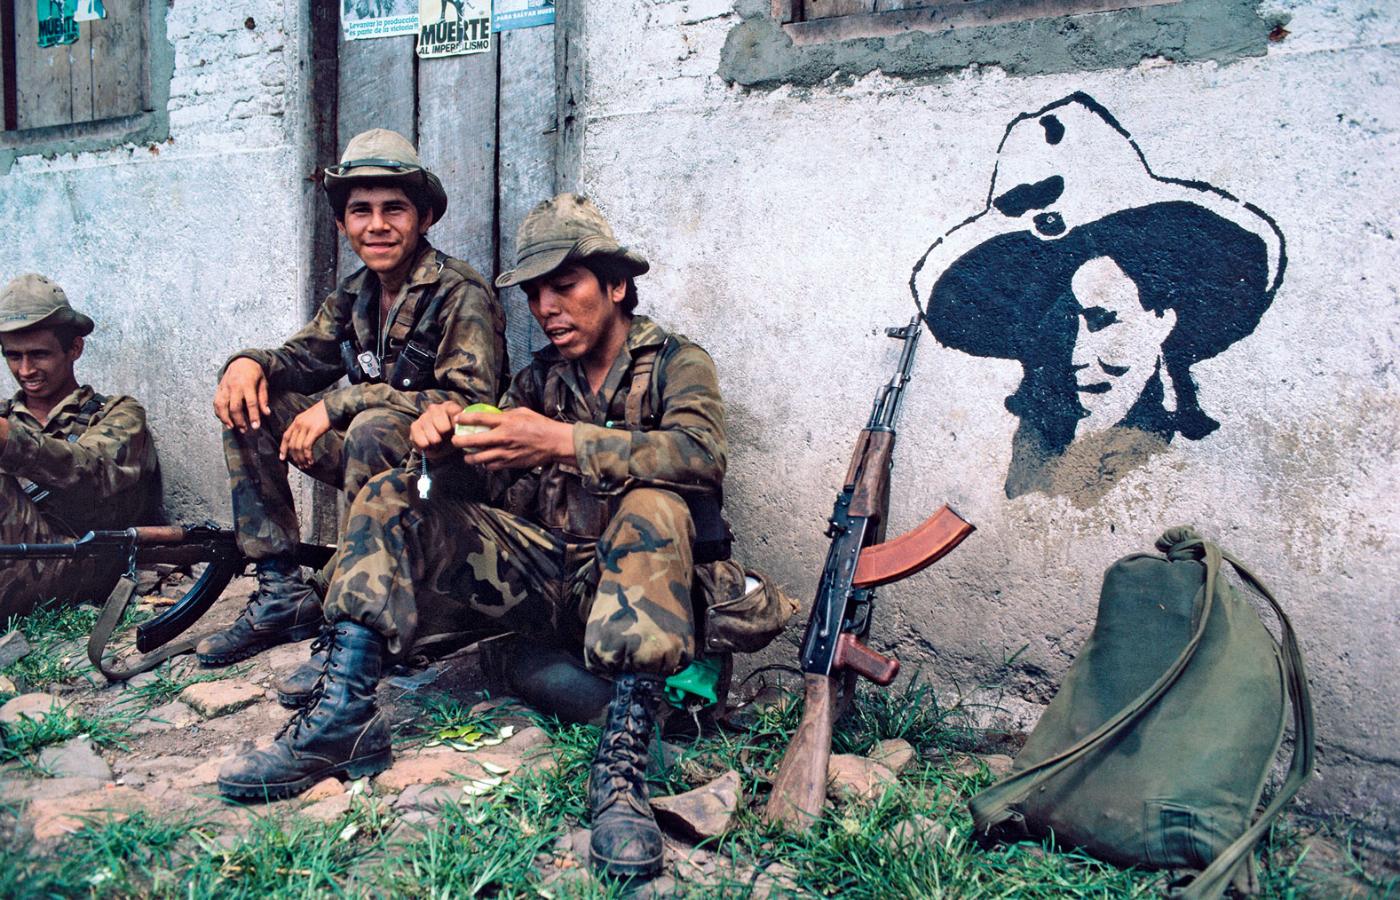 Żołnierski patrol odpoczywający pod ścianą z wizerunkiem Augusta Sandino, 1985 r.